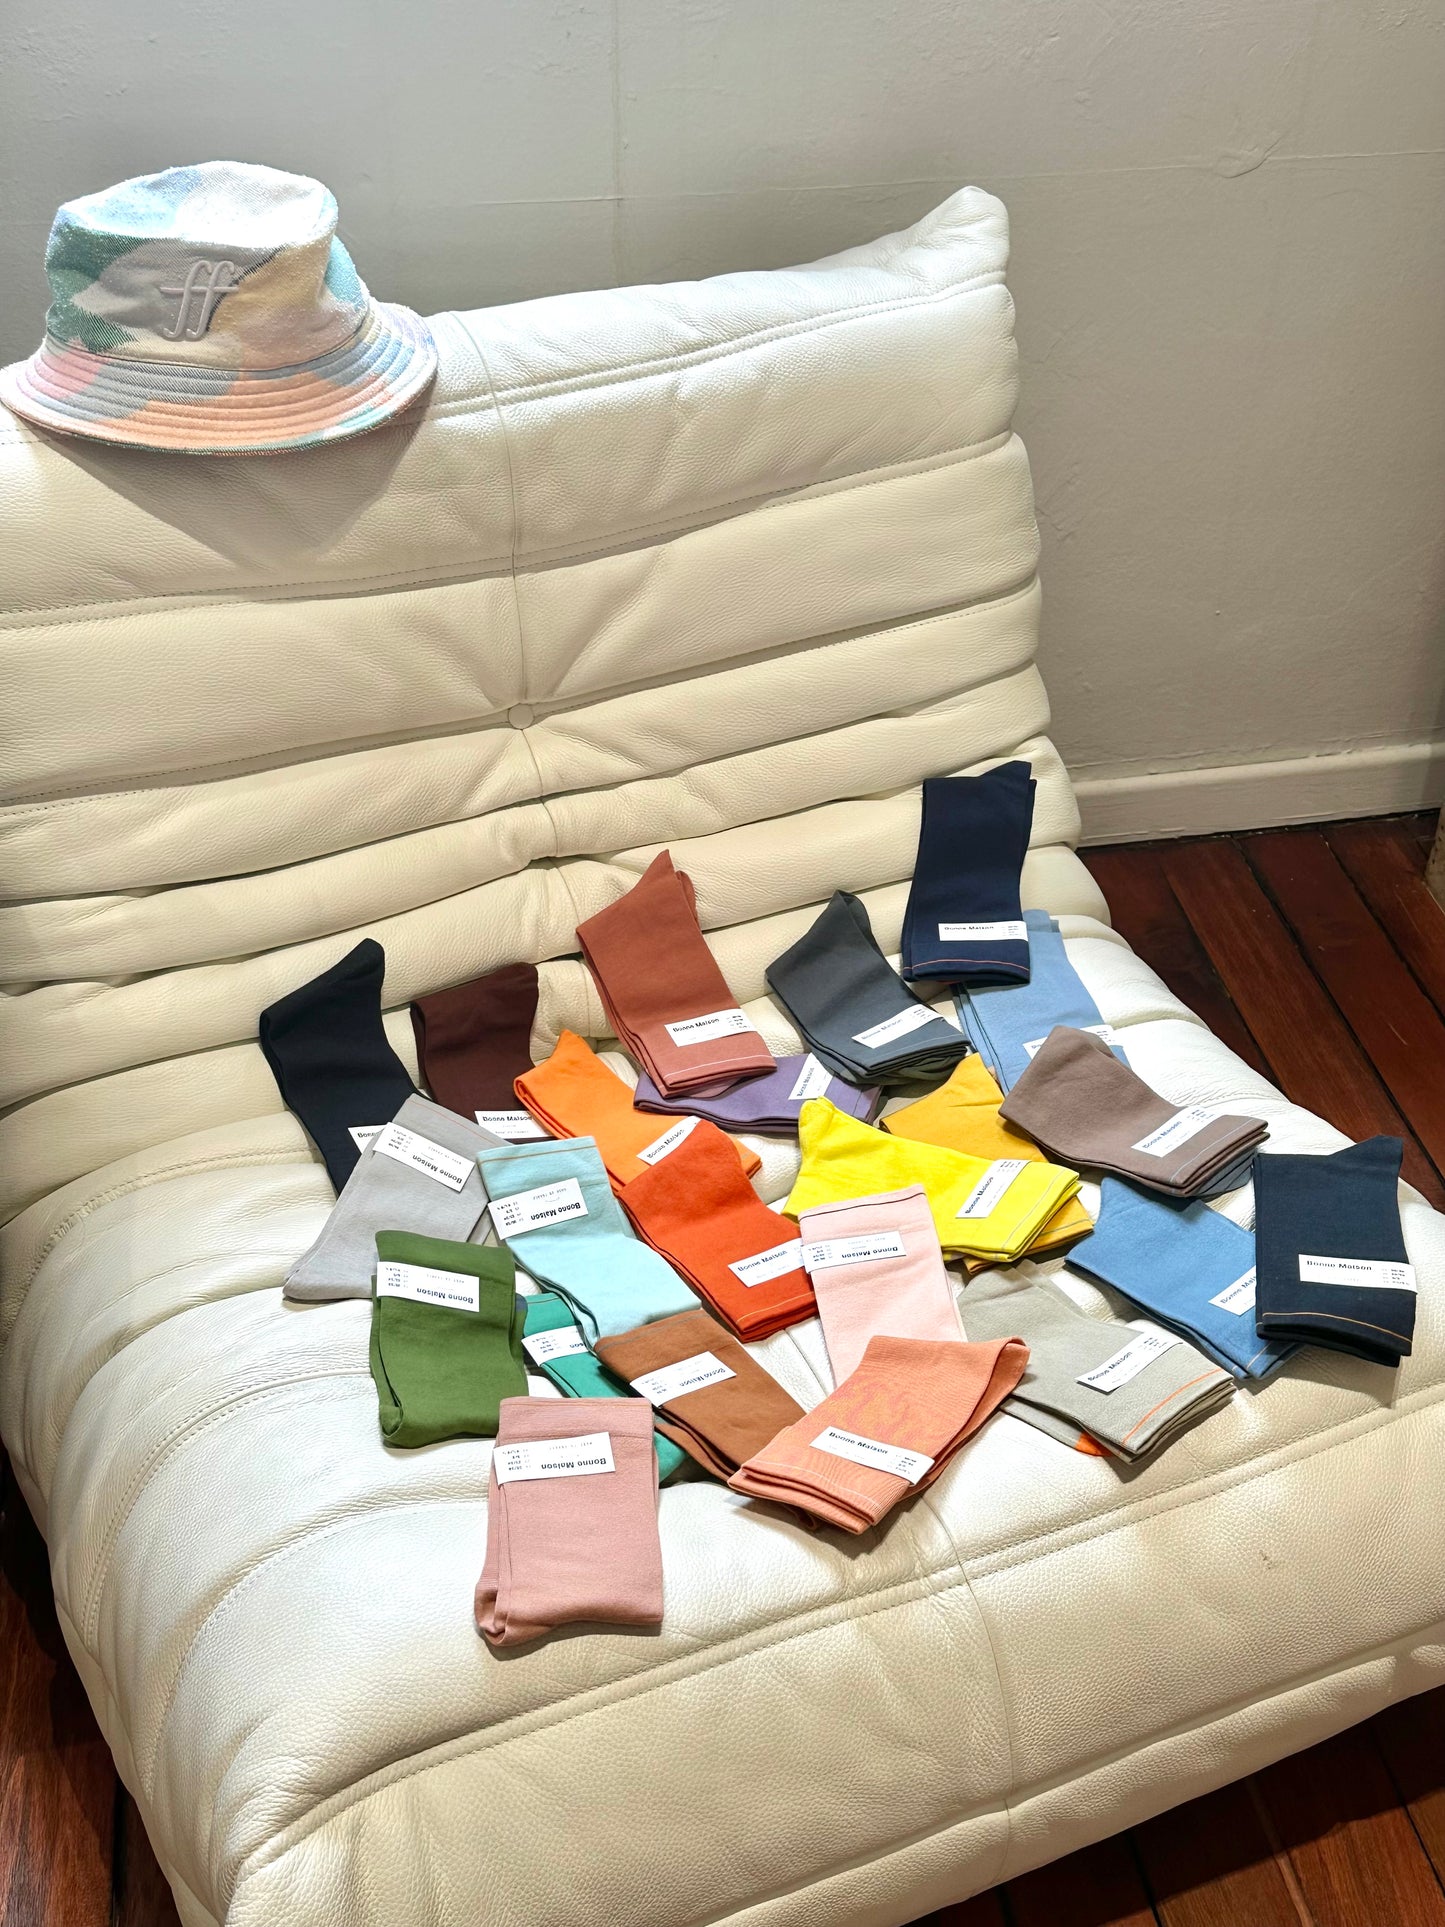 Bonne Maison Socks Single Color 03